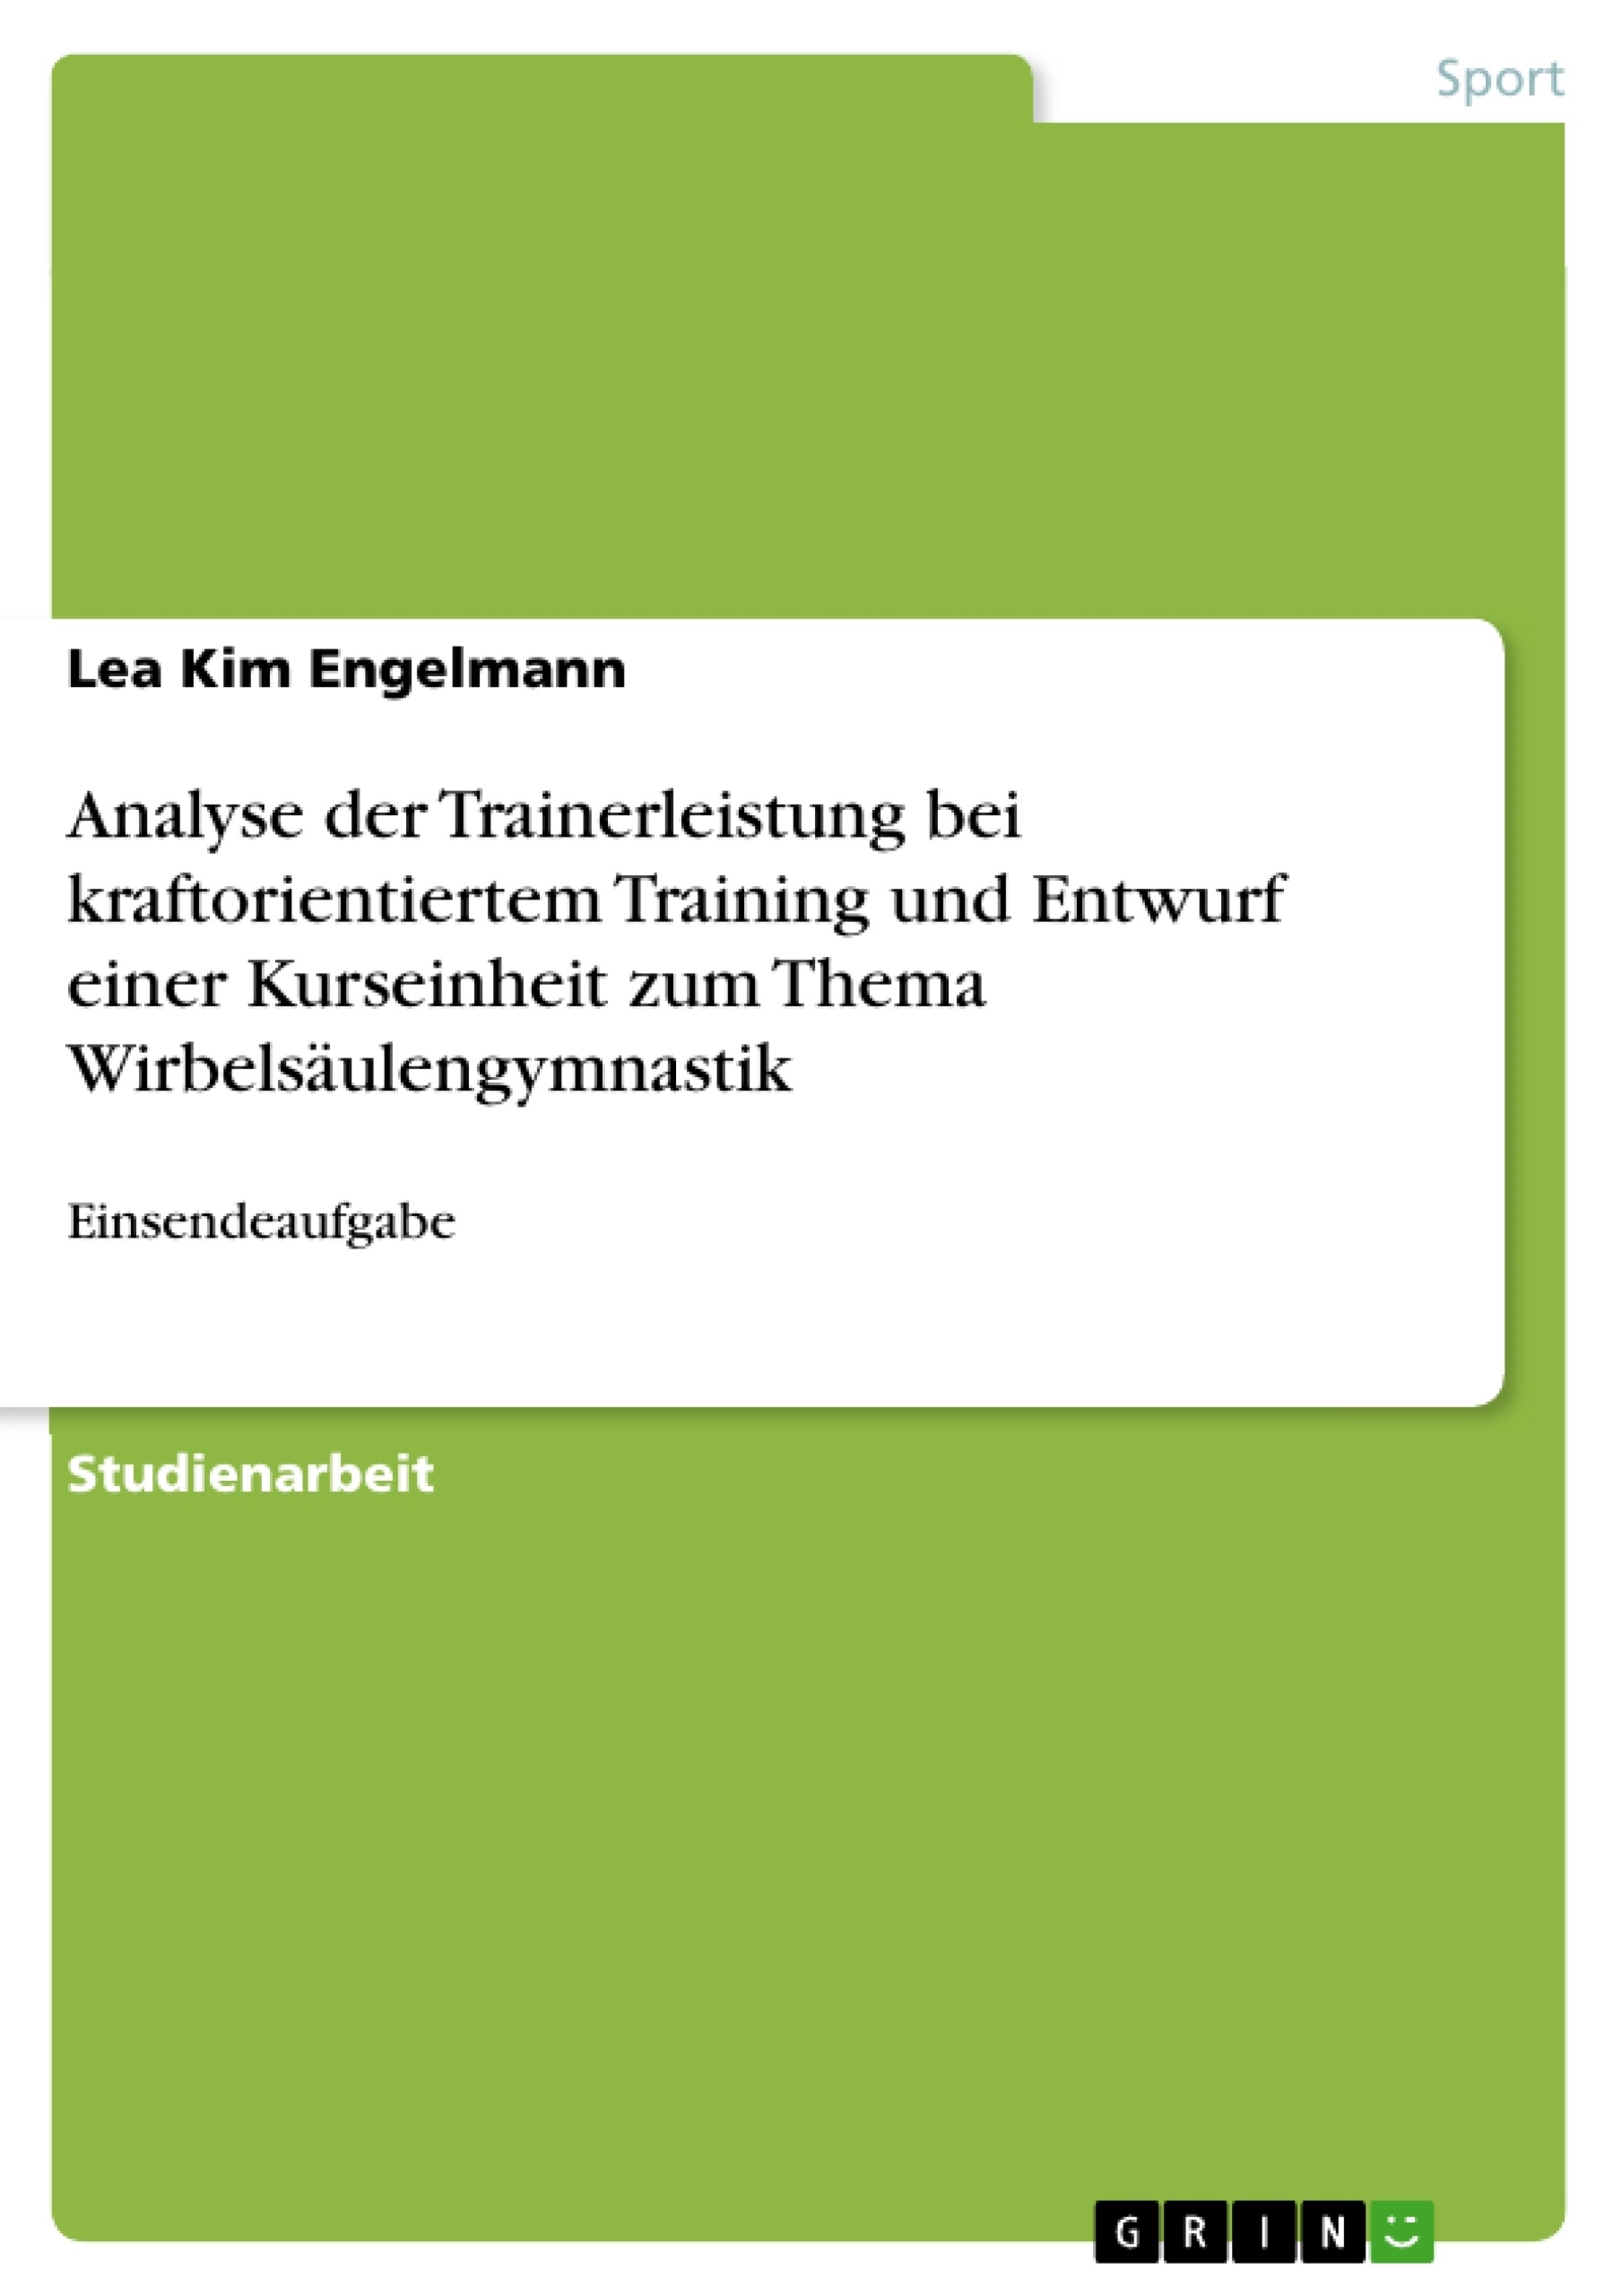 Titel: Analyse der Trainerleistung bei kraftorientiertem Training und Entwurf einer Kurseinheit zum Thema Wirbelsäulengymnastik